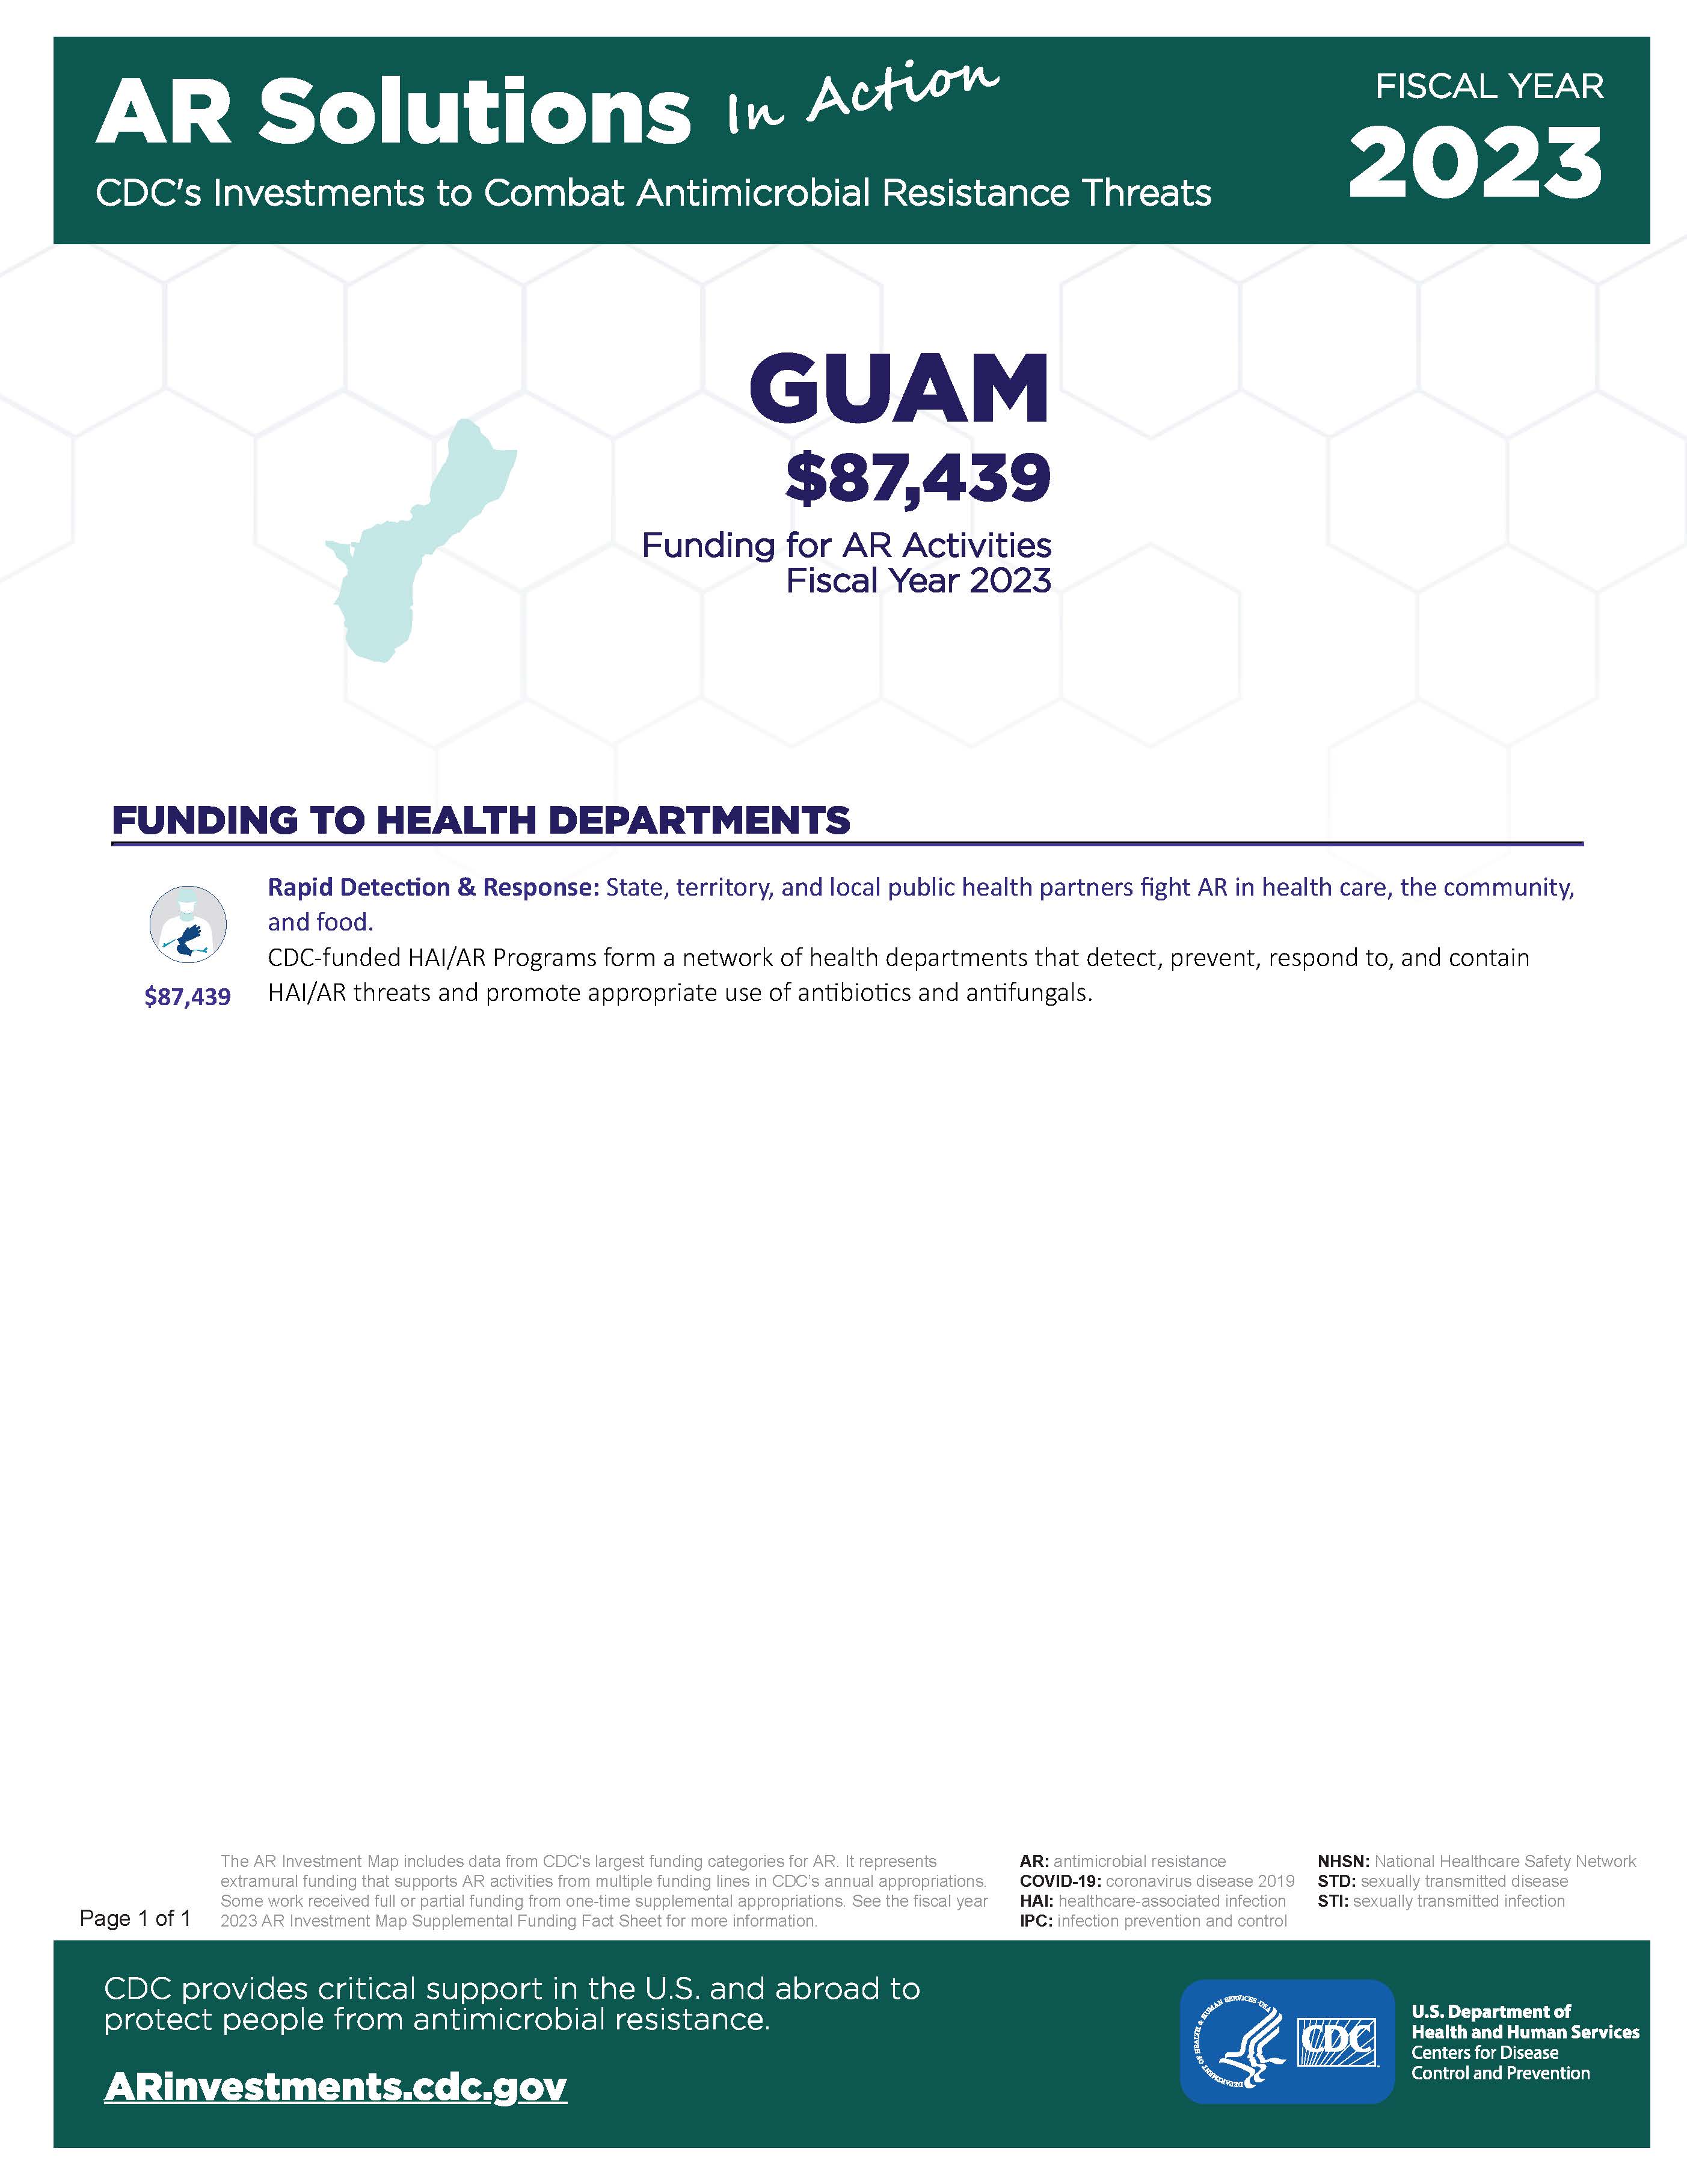 View Factsheet for Guam